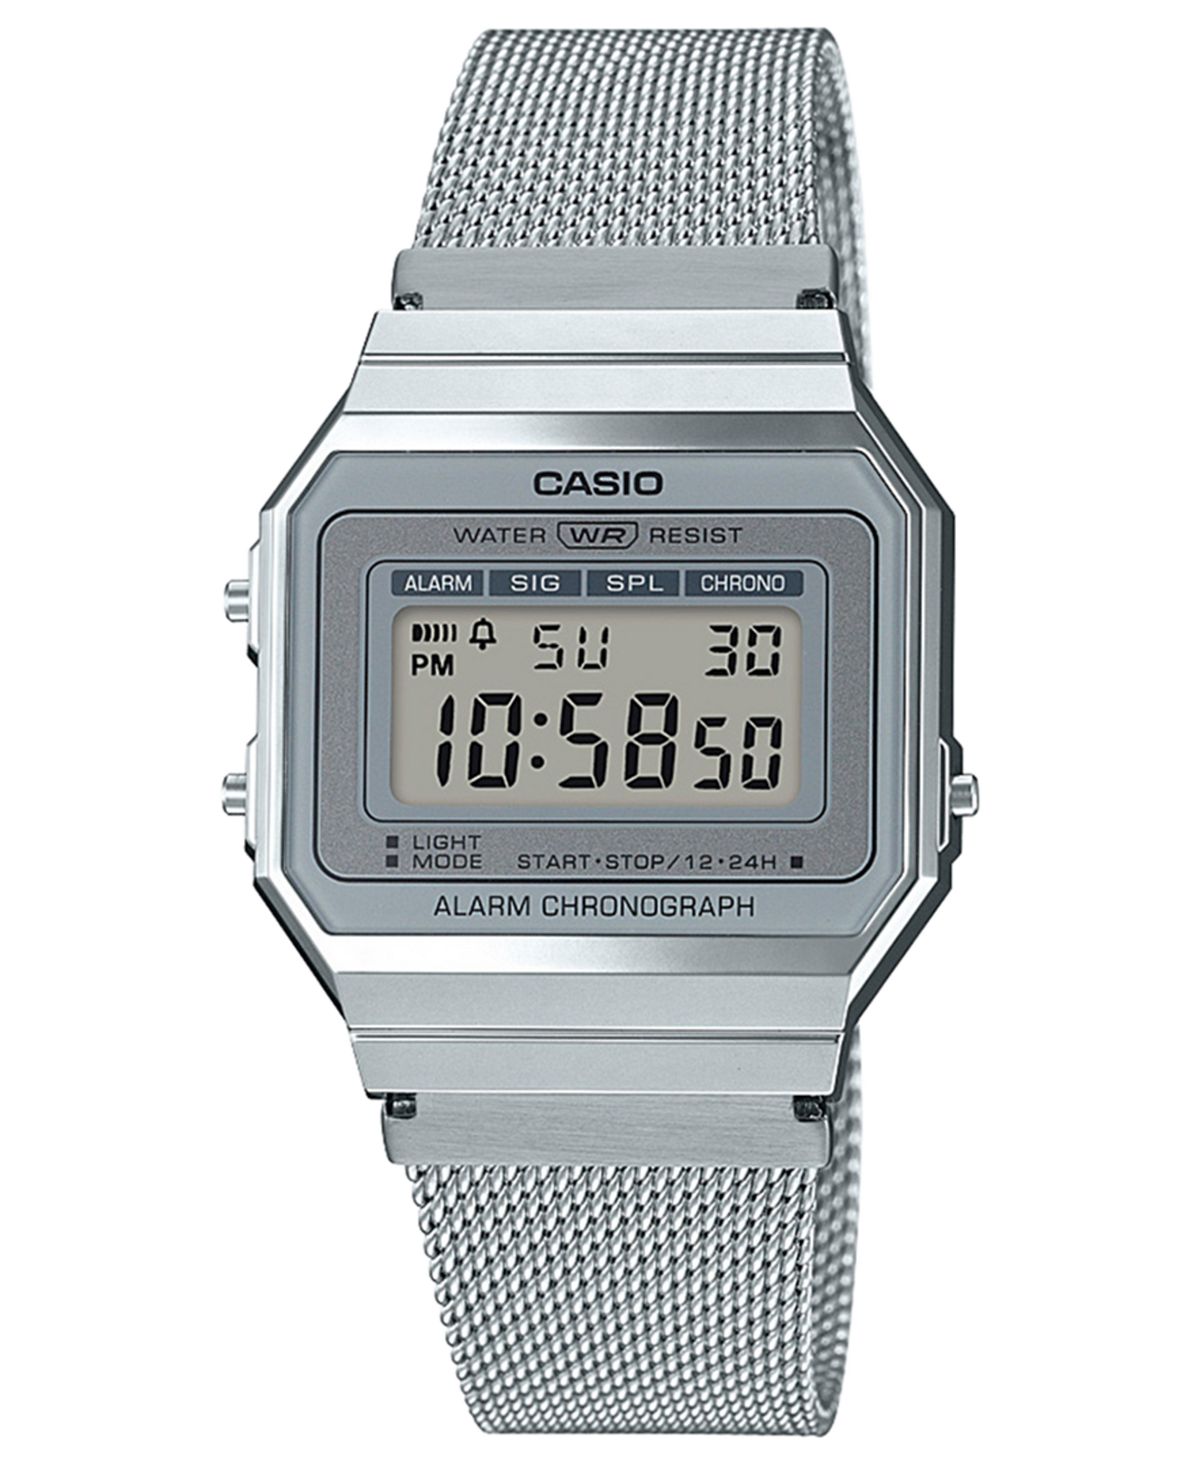 Унисекс цифровые часы-браслет из нержавеющей стали с сеткой 35,5 мм Casio, серебро